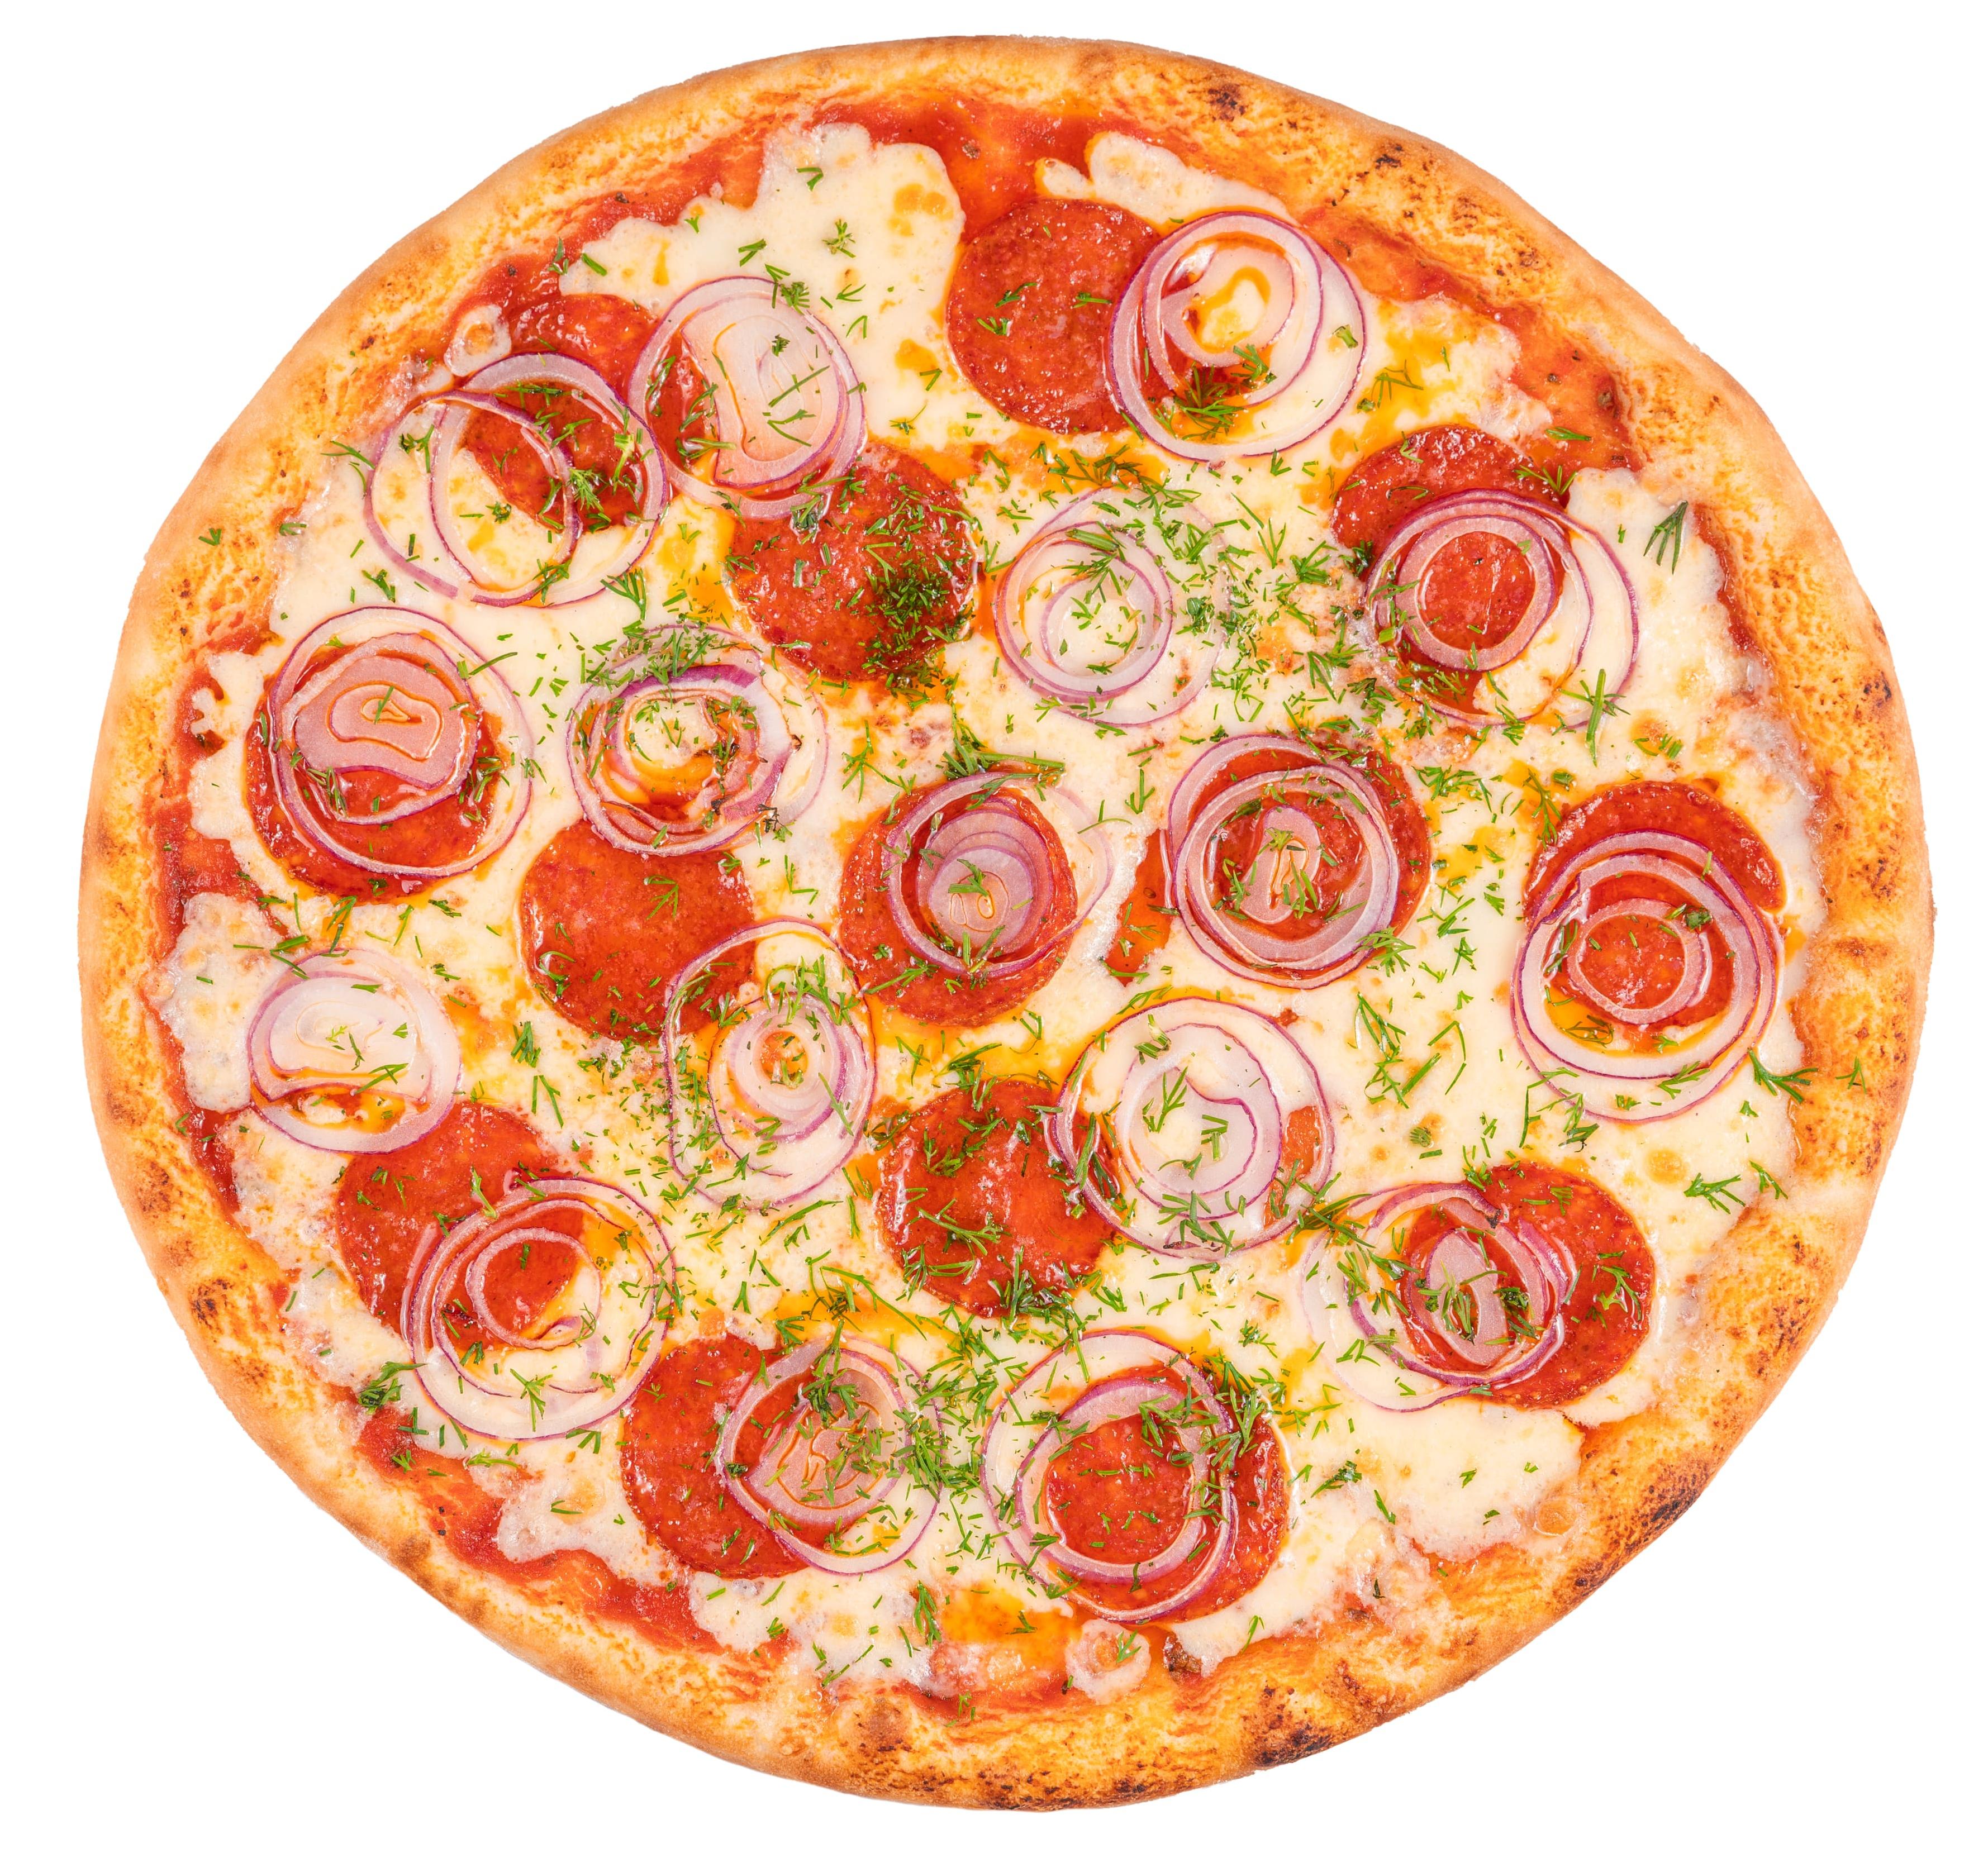 тесто на пепперони пицца фото 118